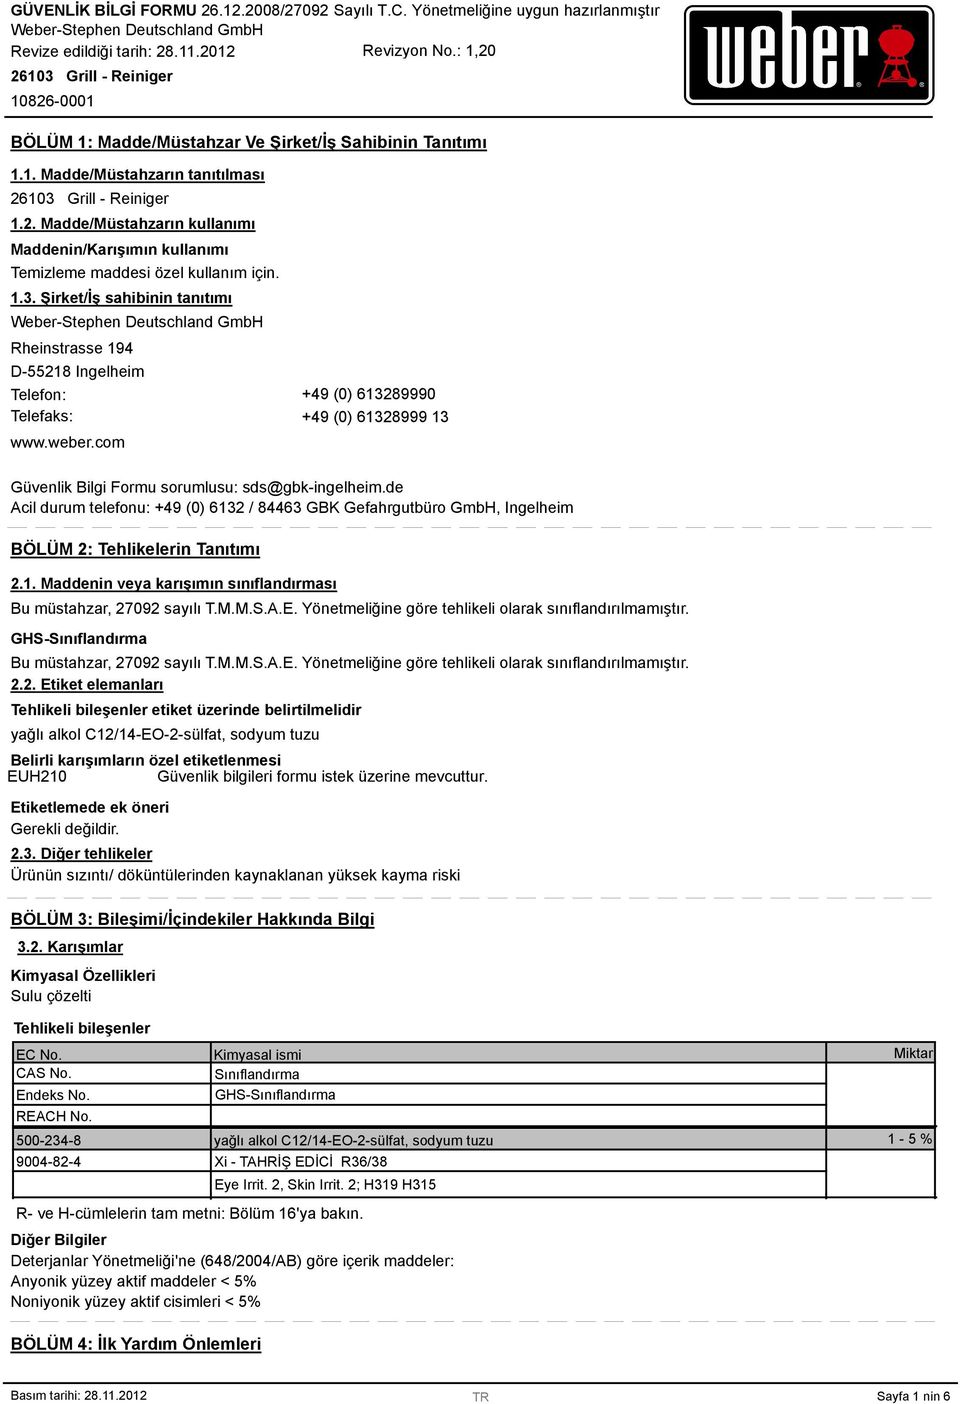 de Acil durum telefonu: +49 (0) 6132 / 84463 GBK Gefahrgutbüro GmbH, Ingelheim BÖLÜM 2: Tehlikelerin Tanıtımı 2.1. Maddenin veya karışımın sınıflandırması Bu müstahzar, 27092 sayılı T.M.M.S.A.E.